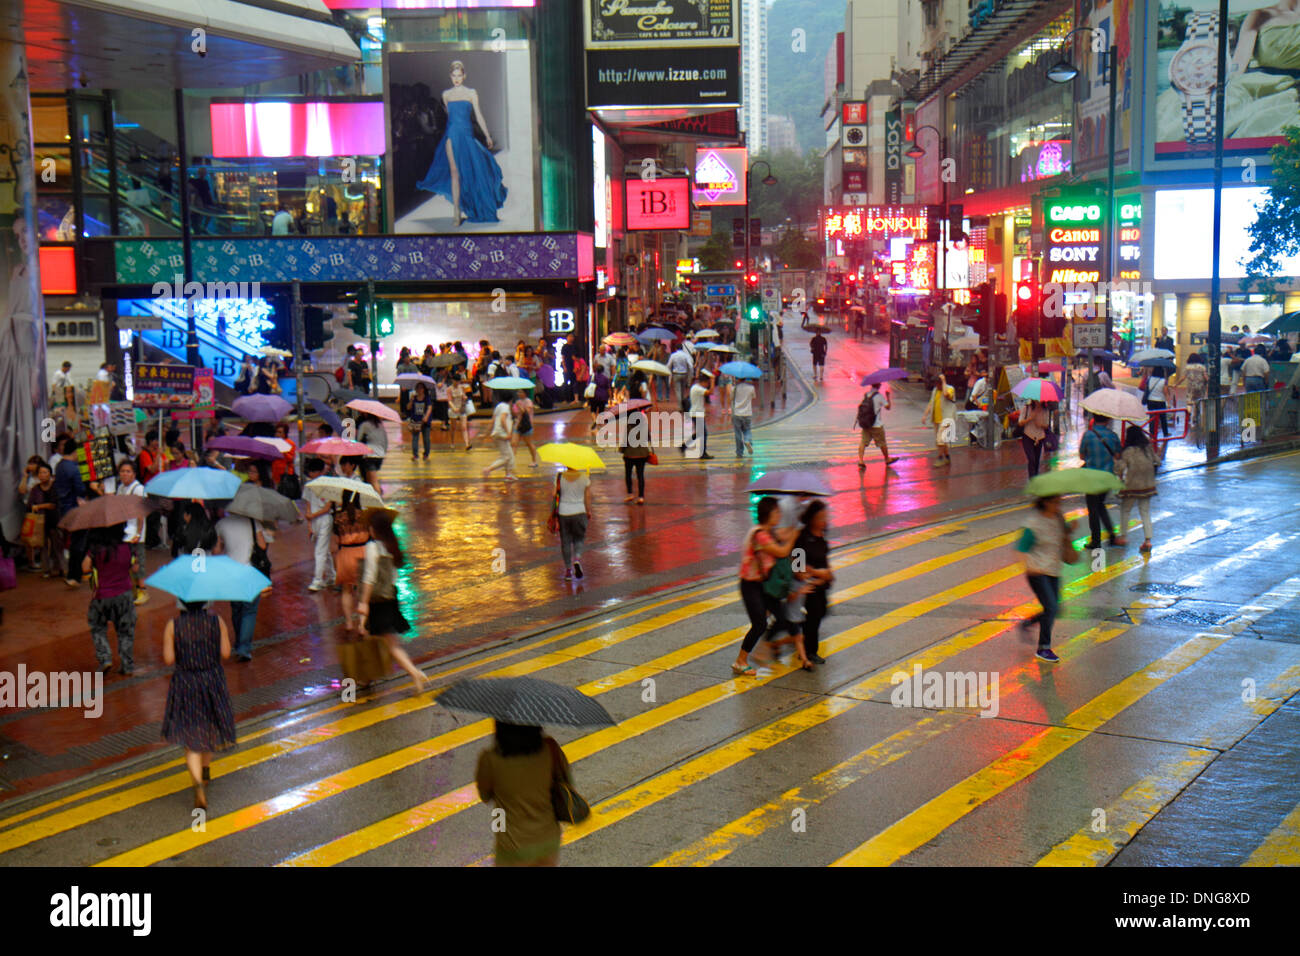 Hongkong China, Hongkong, Asien, Chinesisch, Orientalisch, Insel, Causeway Bay, Yee wo Street, East Point Road, Wetter, Regen, Schilder, Neon, Regenschirme, Nachtabend, Einkaufen Stockfoto